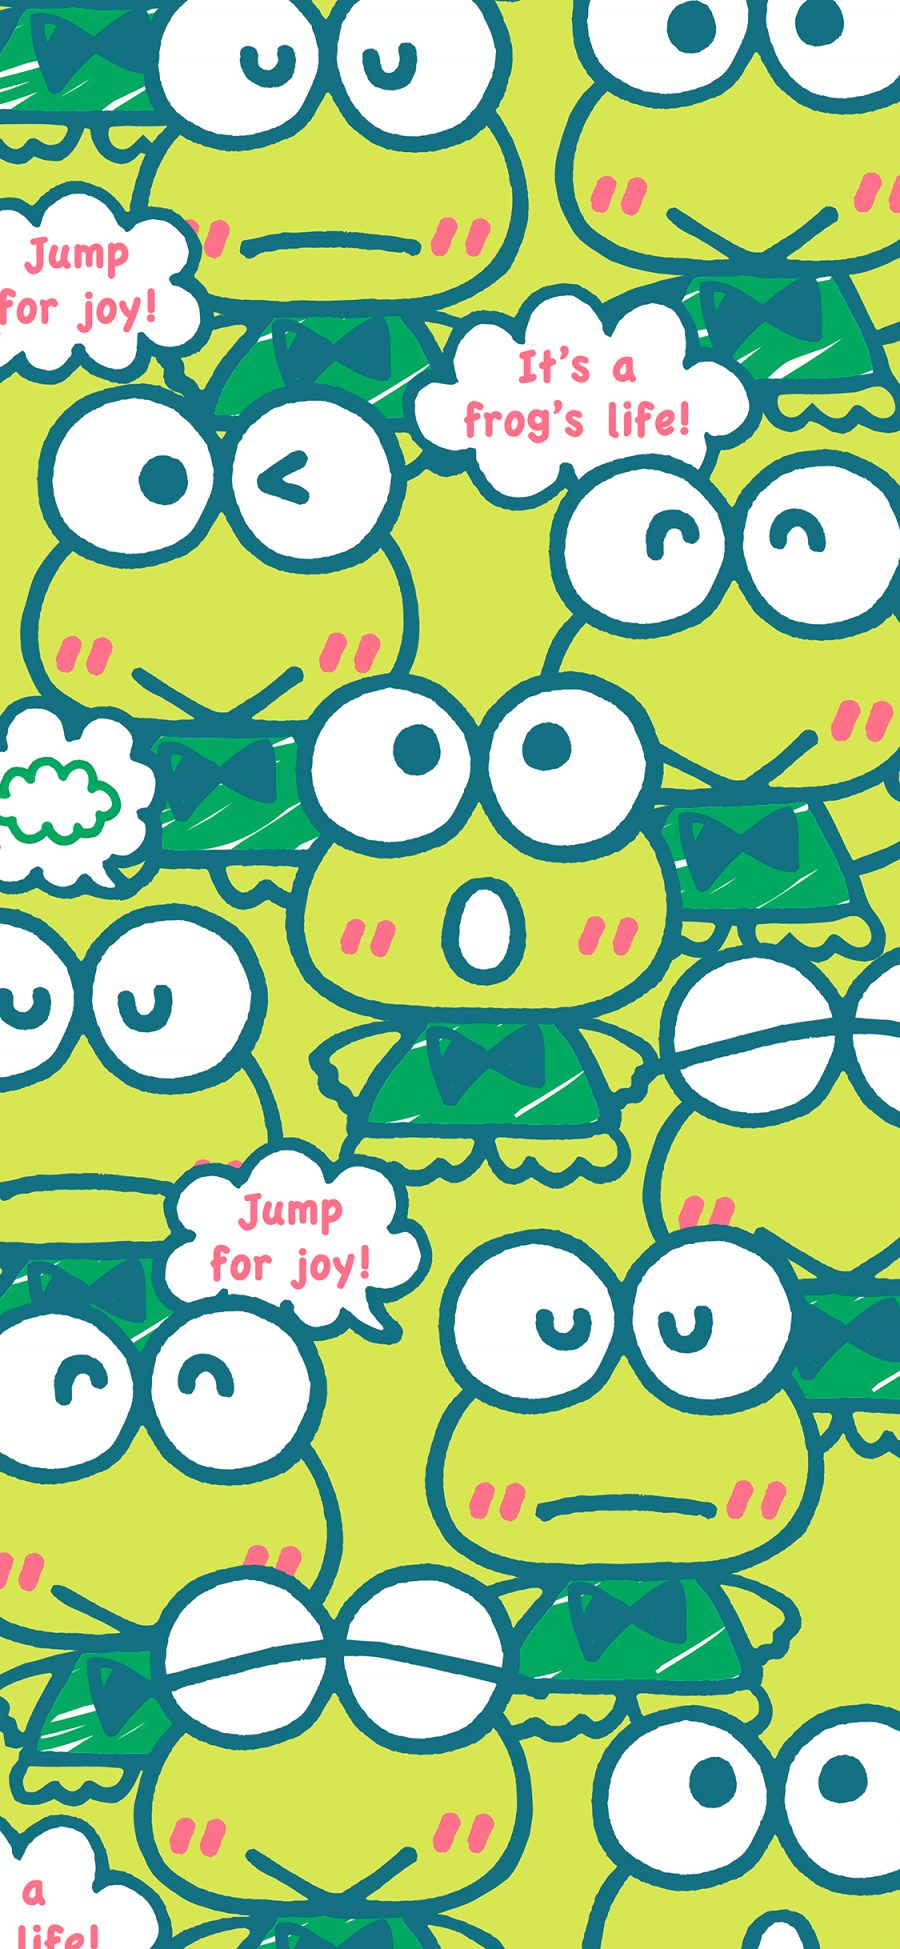 [2436×1125]大眼蛙可洛比 青蛙 绿色 三丽鸥 卡通 平铺 苹果手机动漫壁纸图片